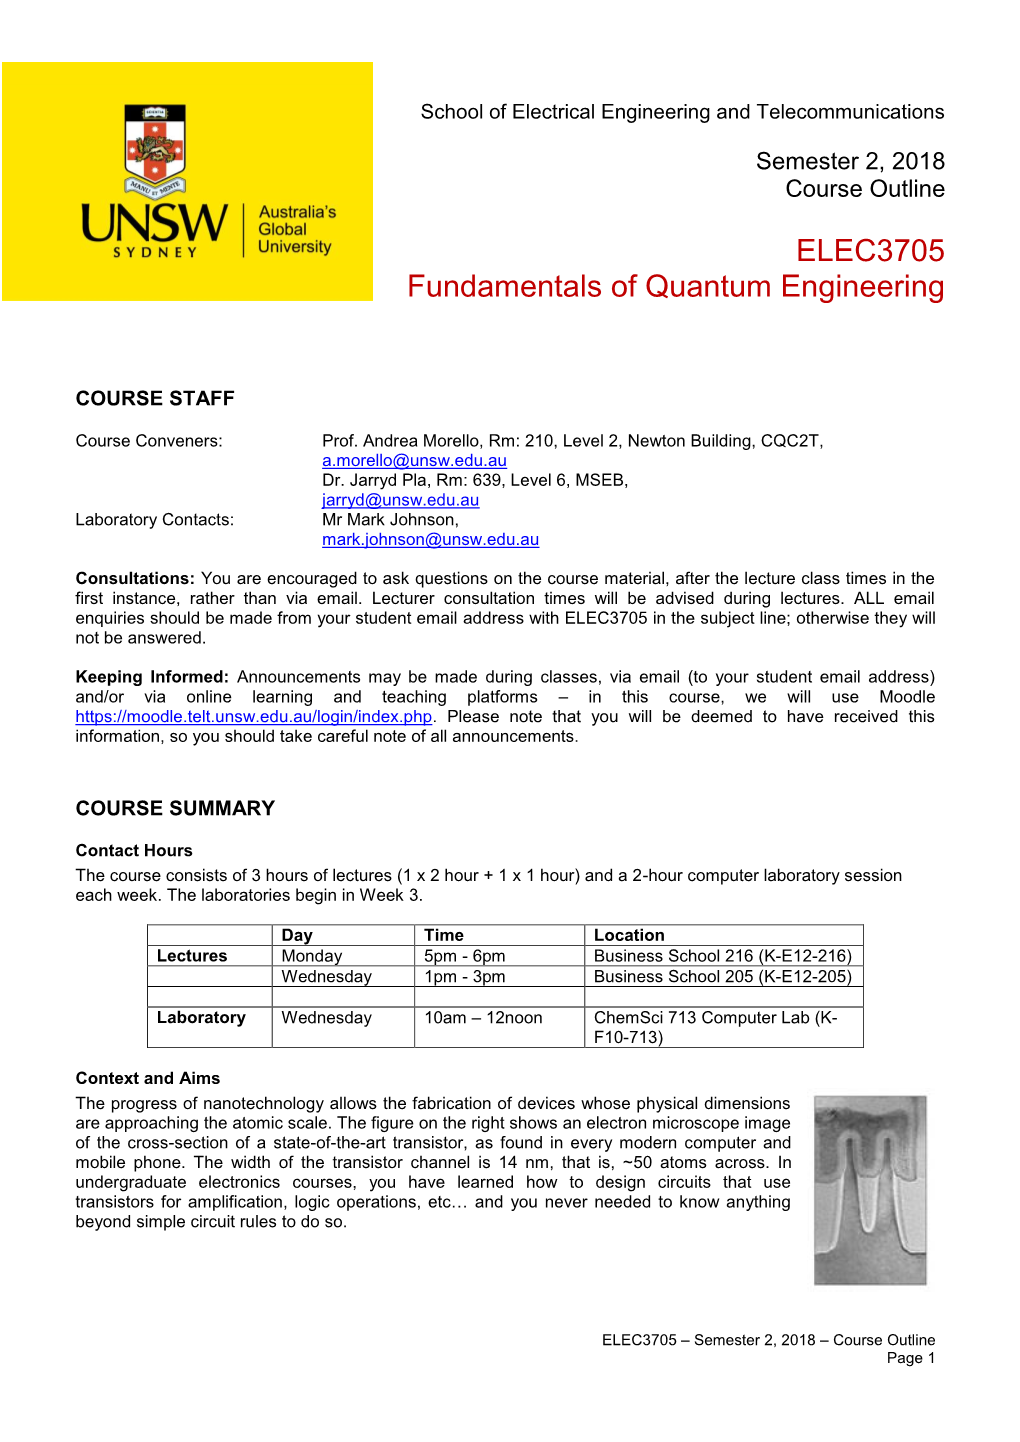 ELEC3705 Fundamentals of Quantum Engineering